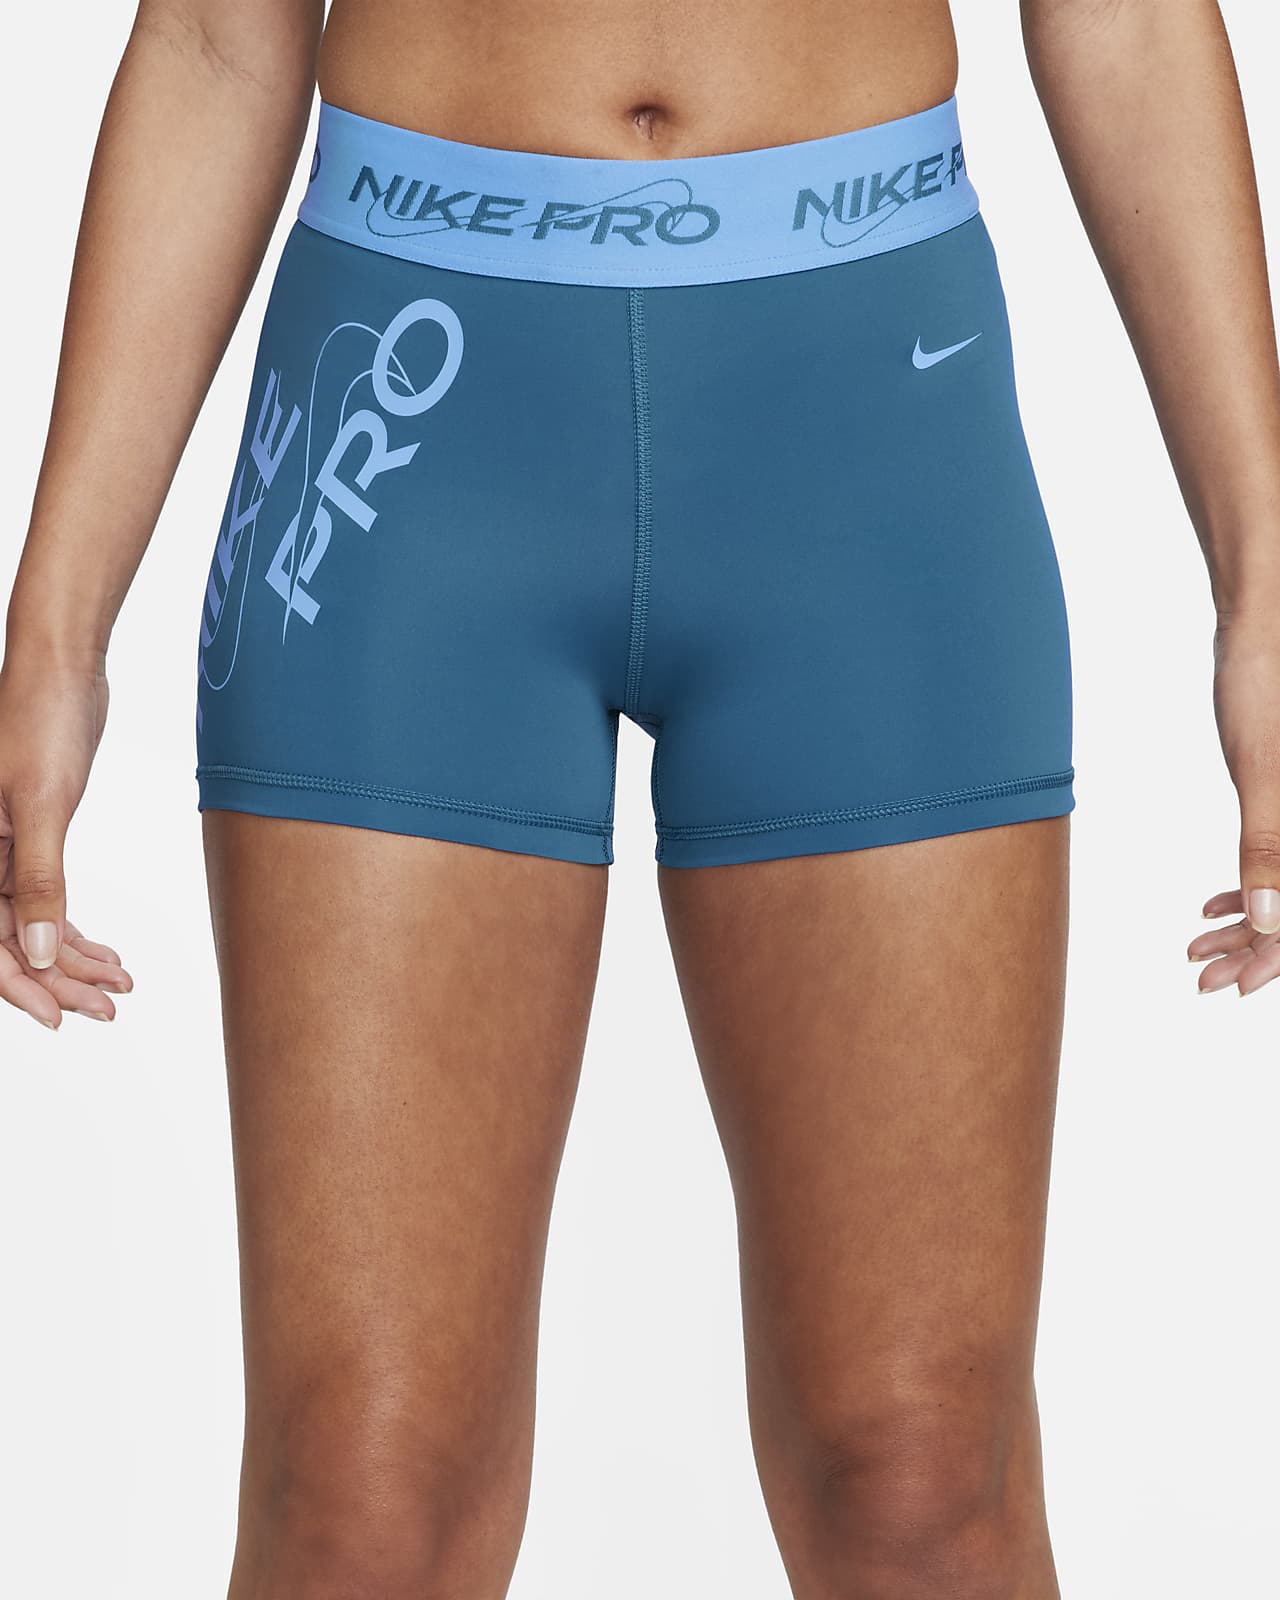 Nike Pro Womens Dri-FIT Mid-Rise Graphic Tights Black XXL